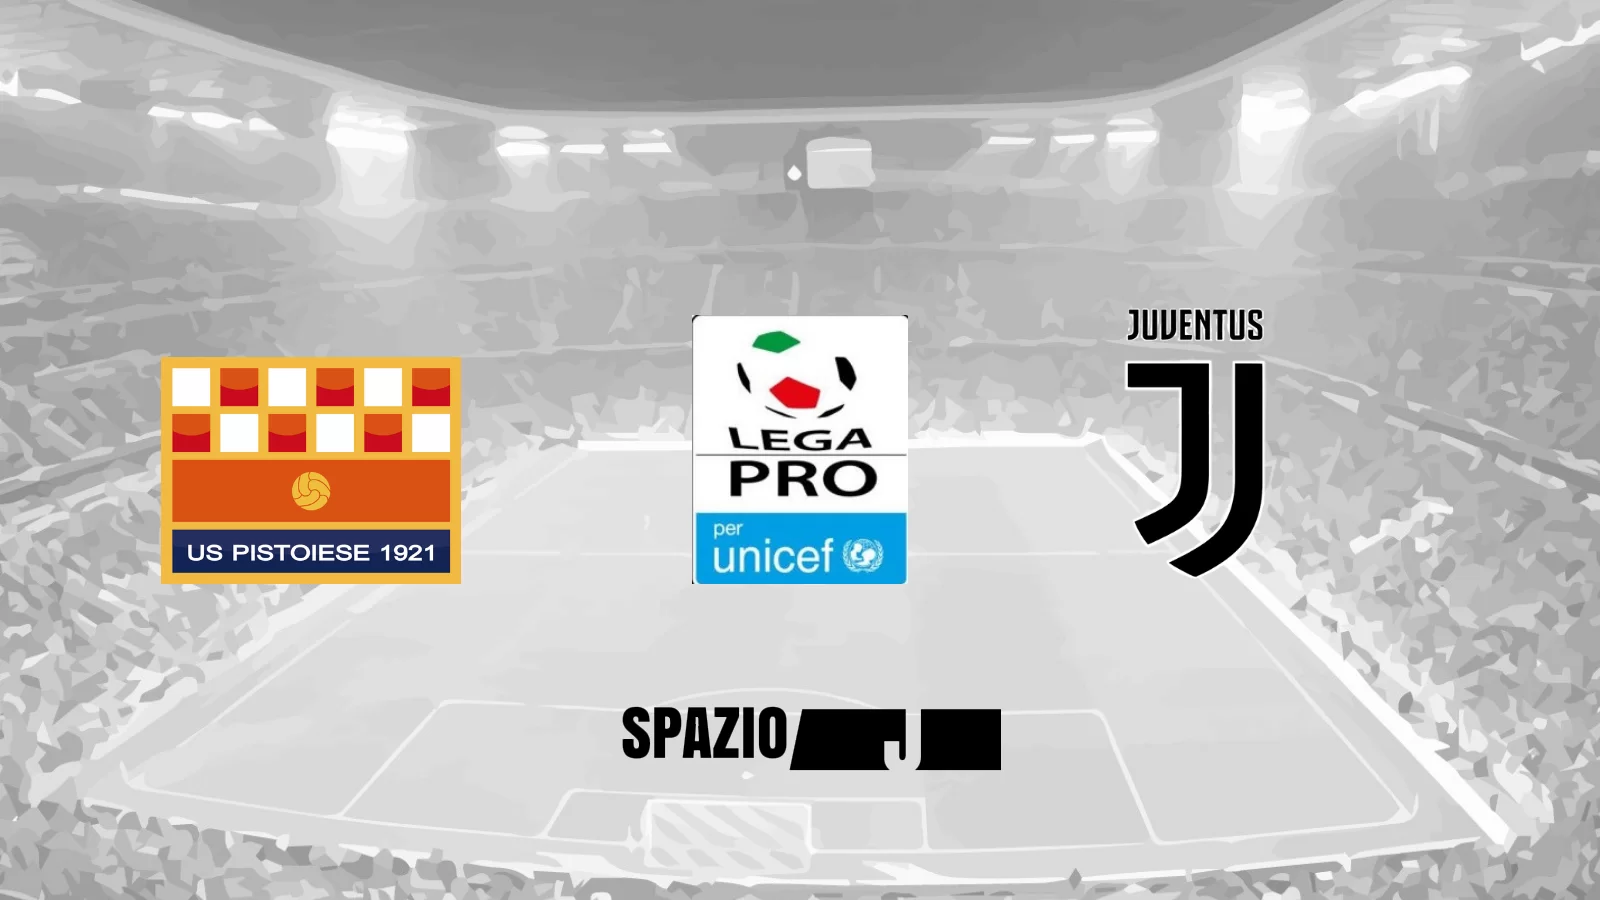 LIVE Pistoiese – Juventus Under 23: la Juve U23 riesce finalmente a vincere, con un finale di gara in inferiorità e di sofferenza. Decide Di Pardo al 2′!